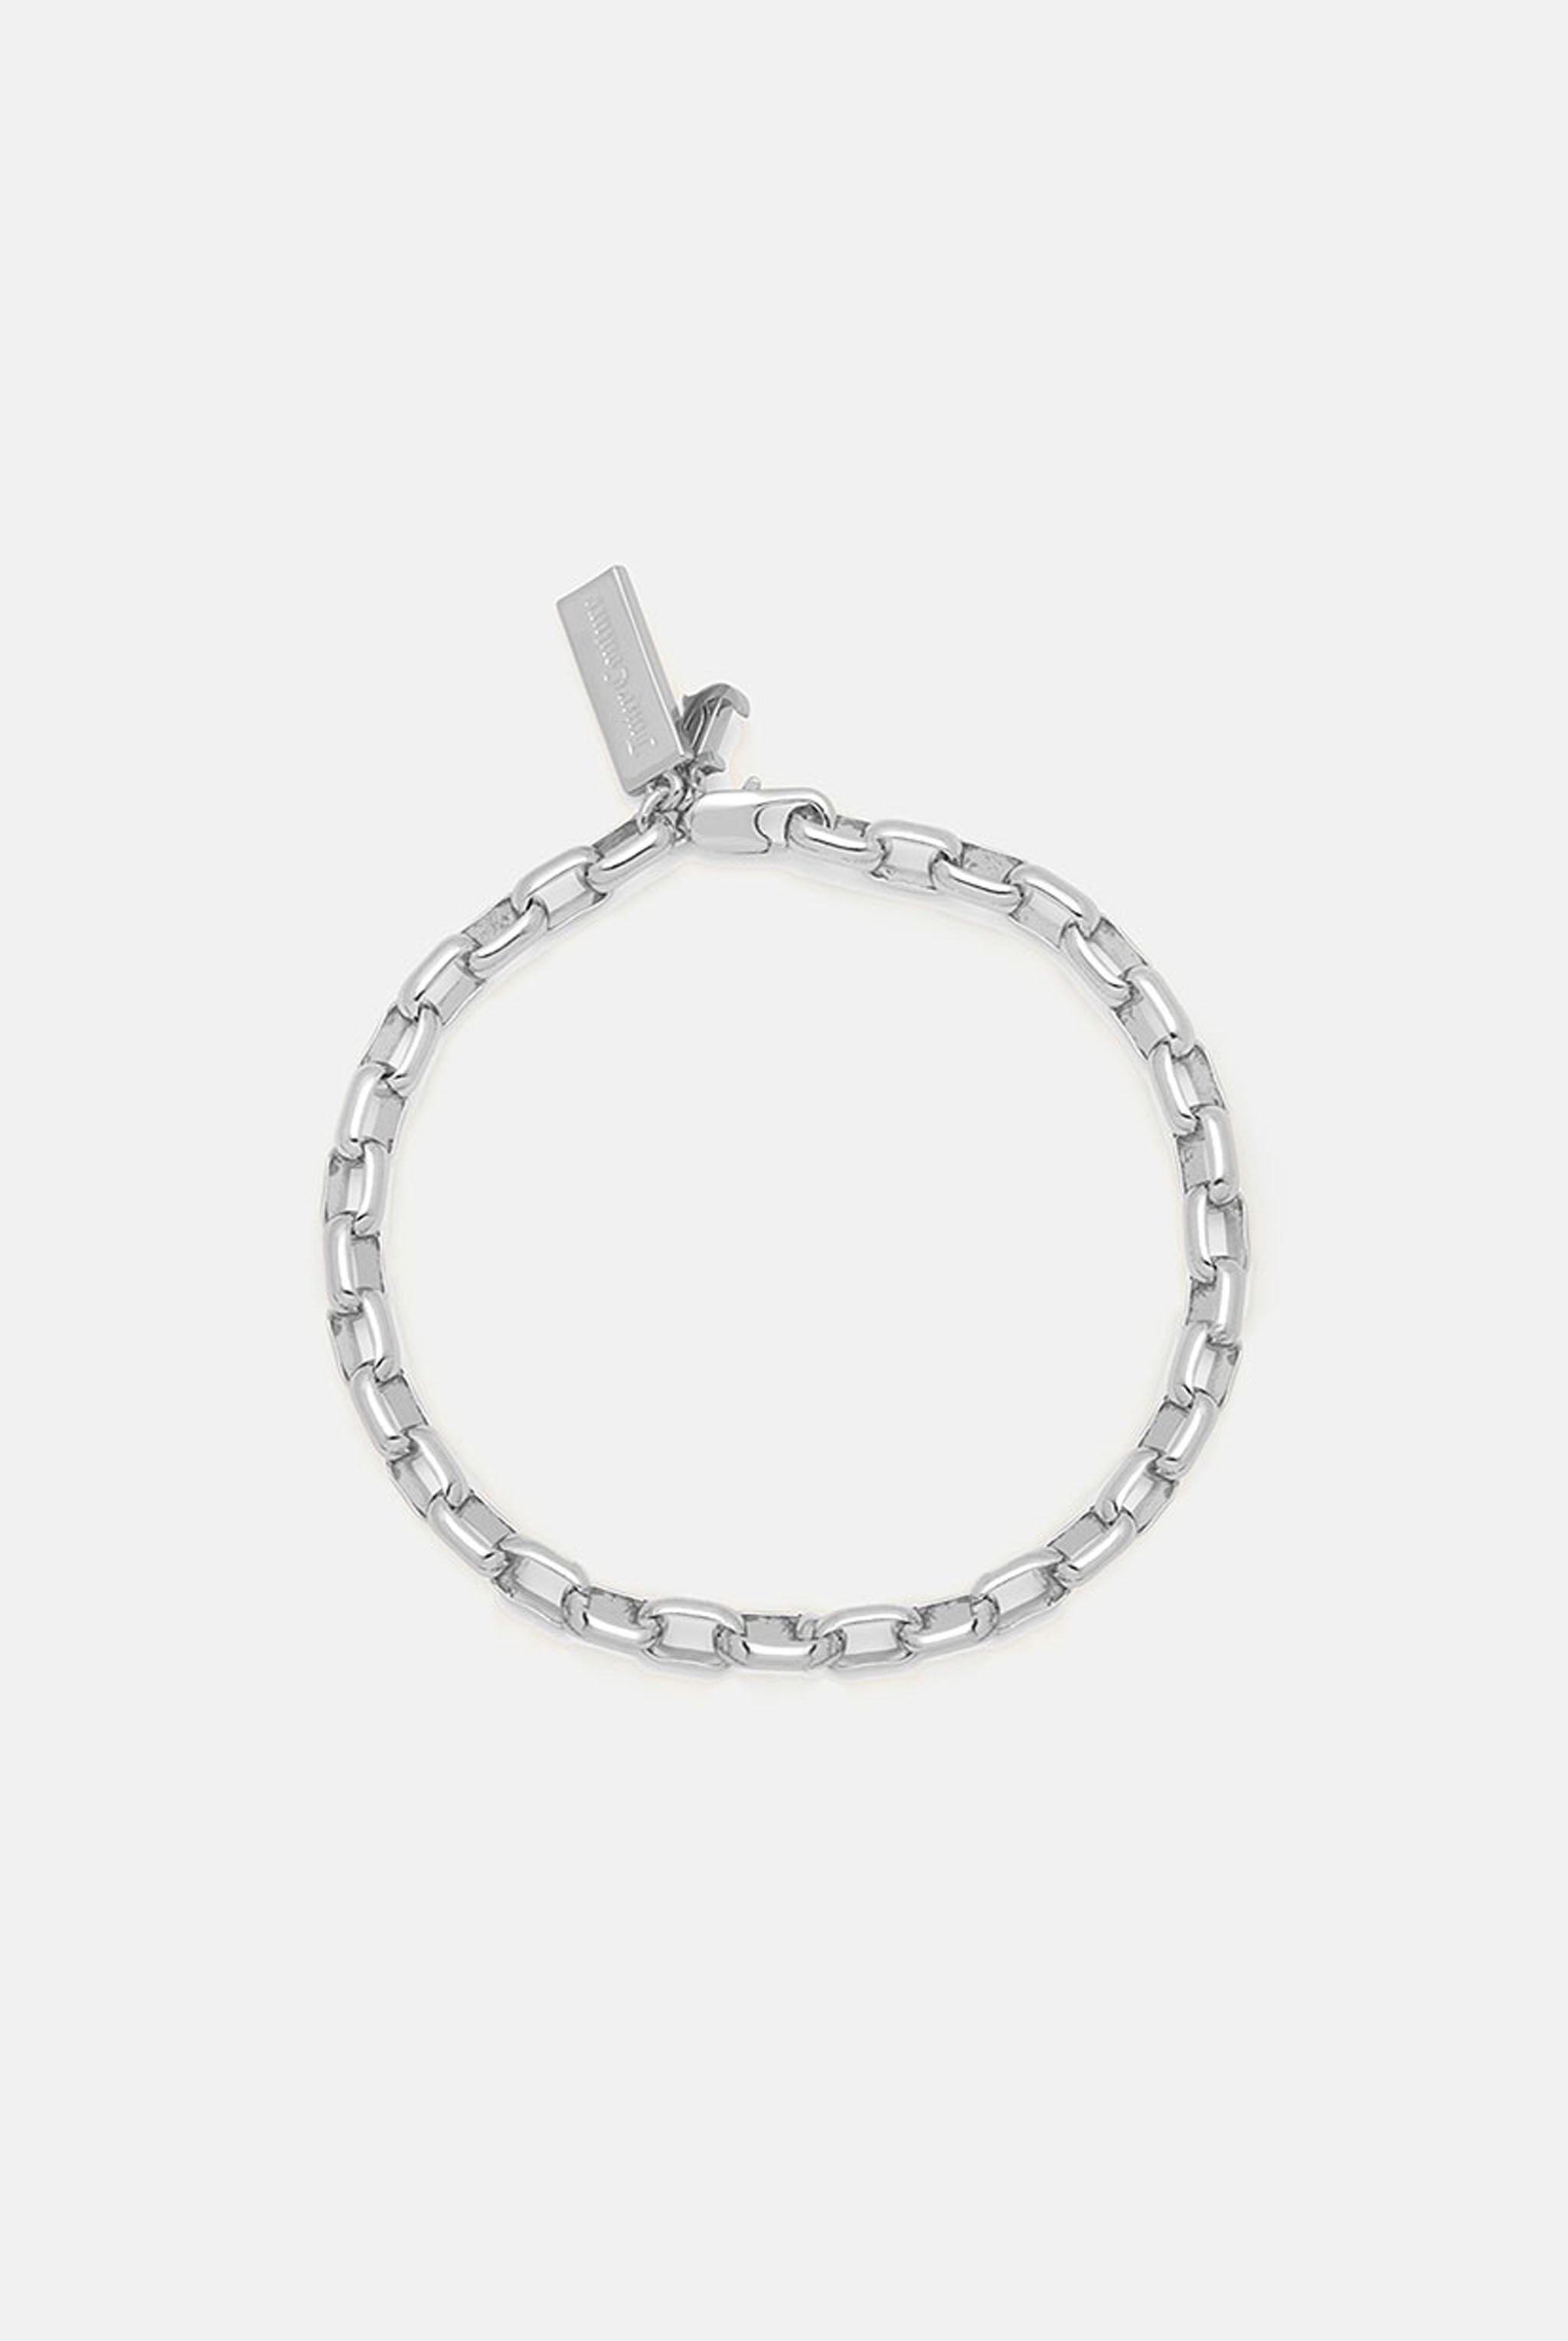 Women's Girls Stainless Steel Love Heart Dangle Beaded Chain Charm Bracelet  Gift -